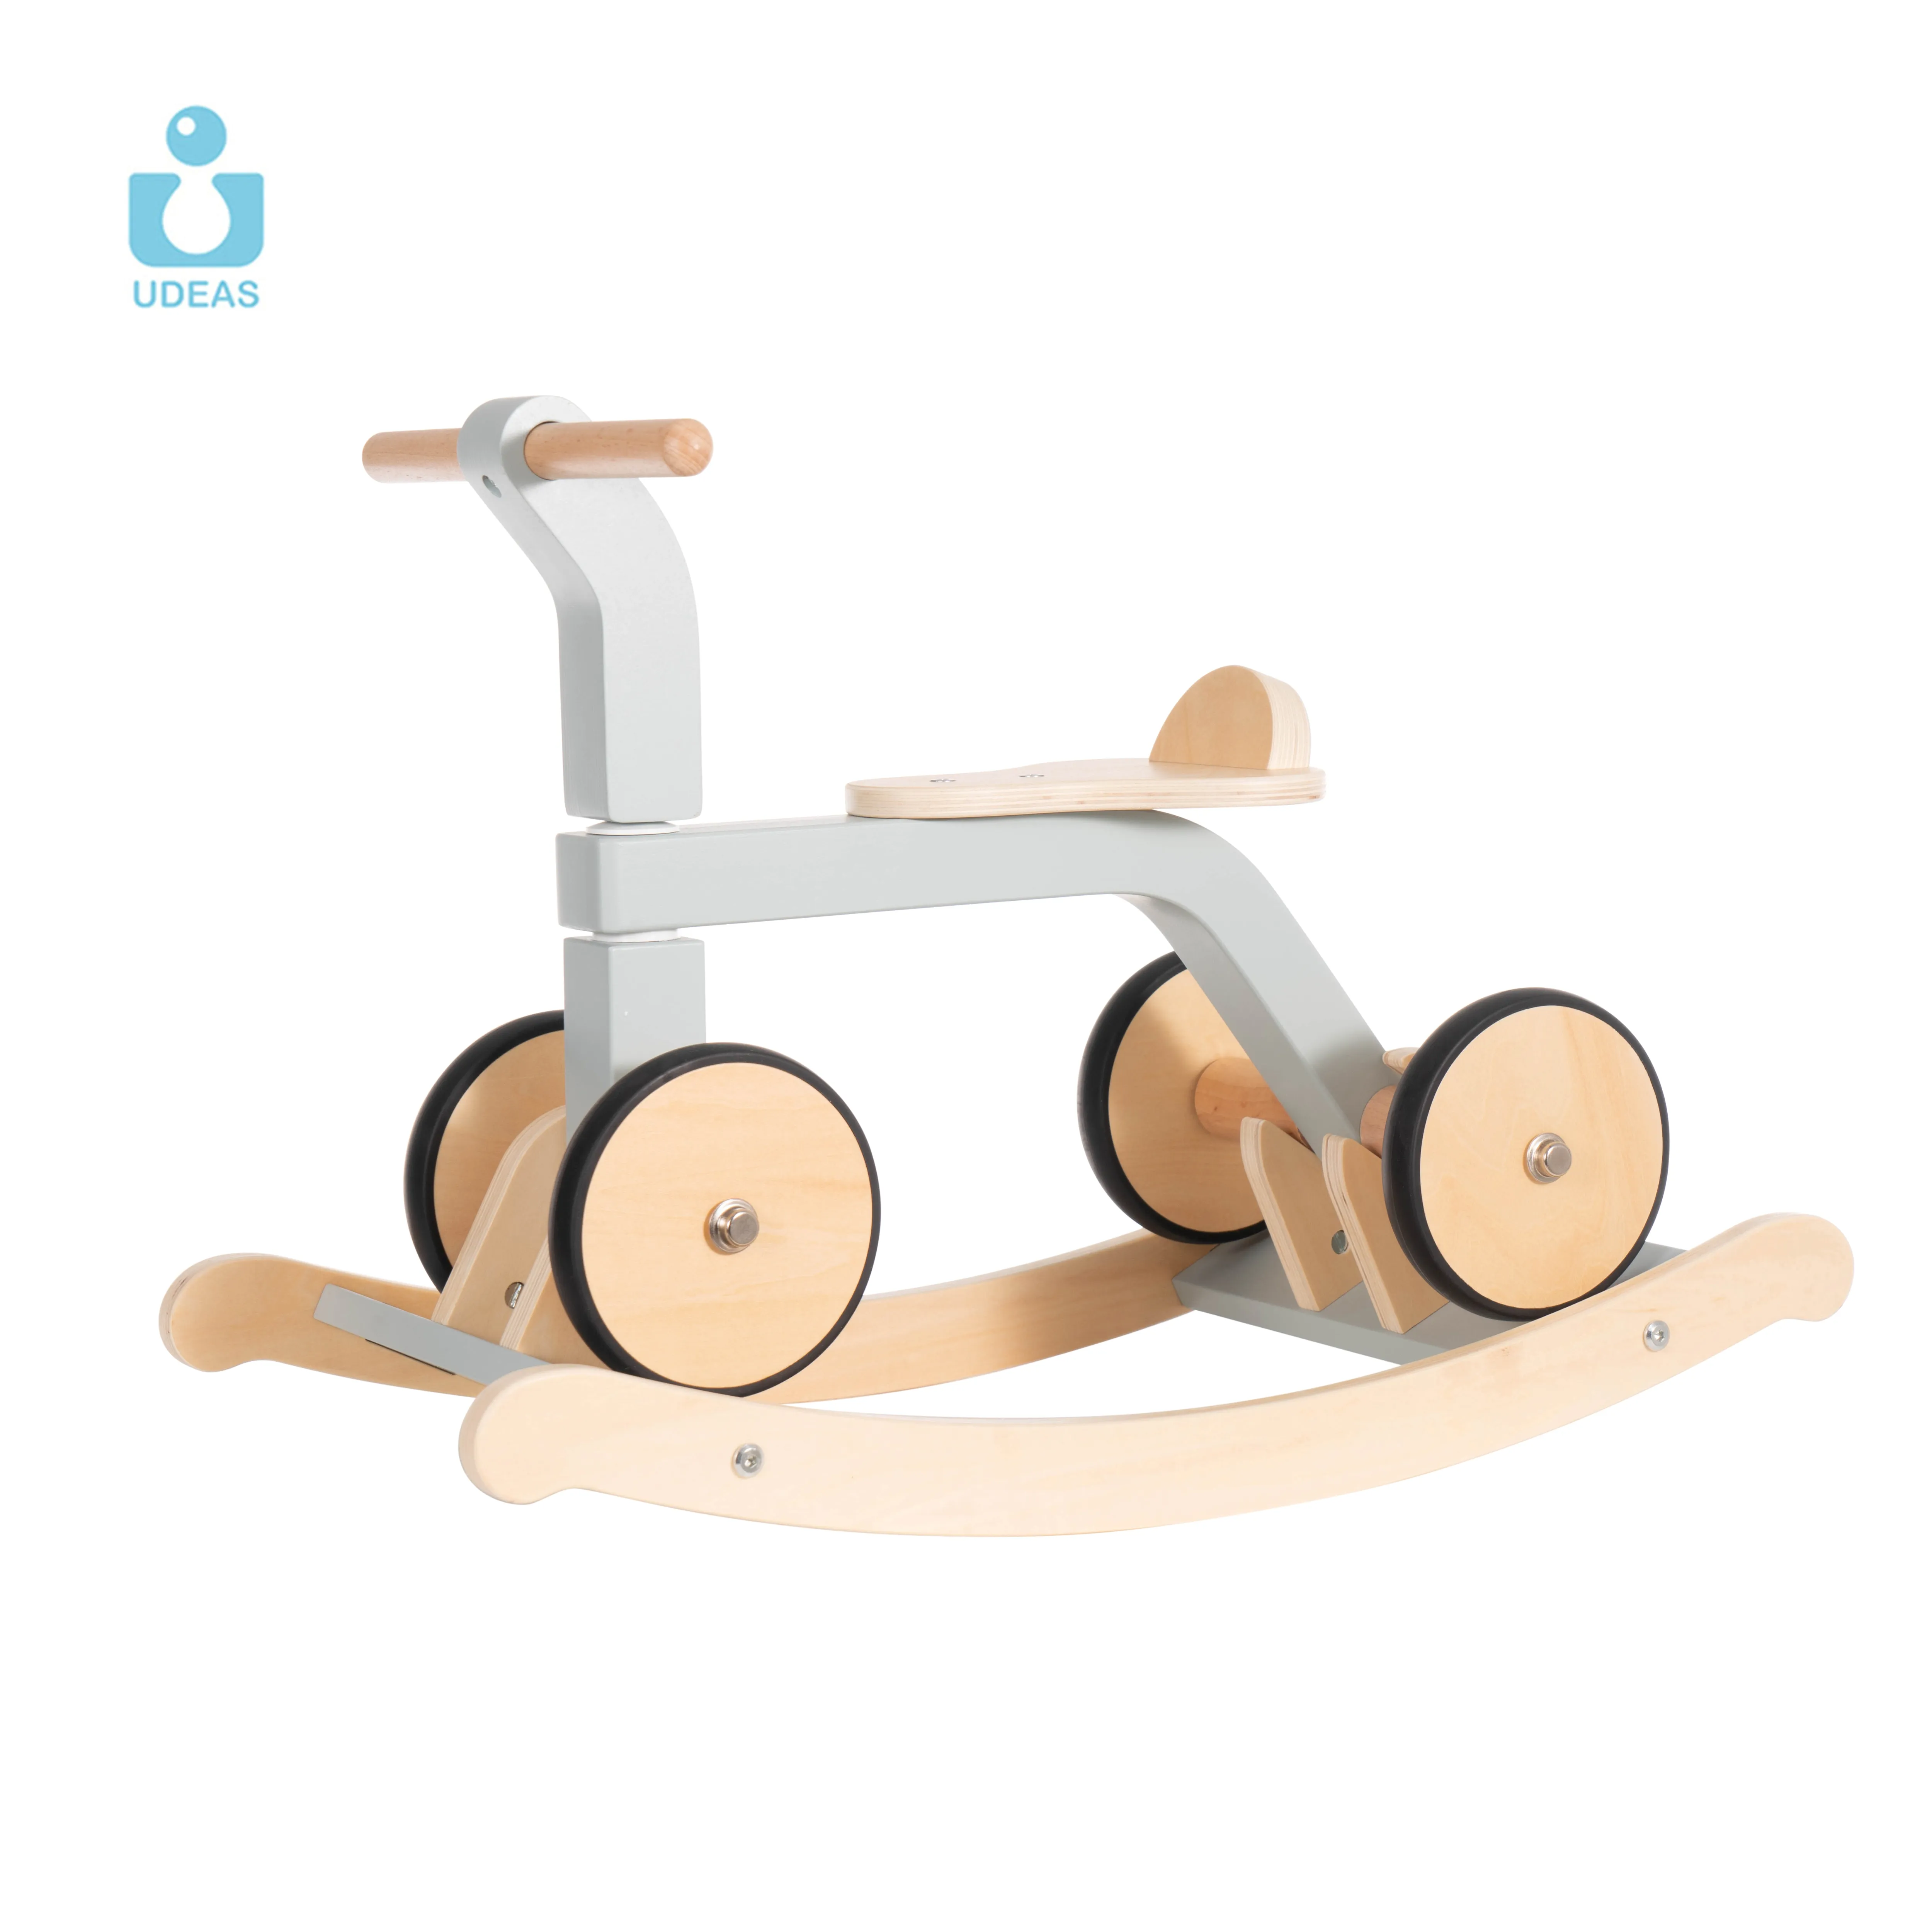 UDEAS 2 en 1 Jouet éducatif d'équilibre pour enfants Cheval à bascule en bois avec roues